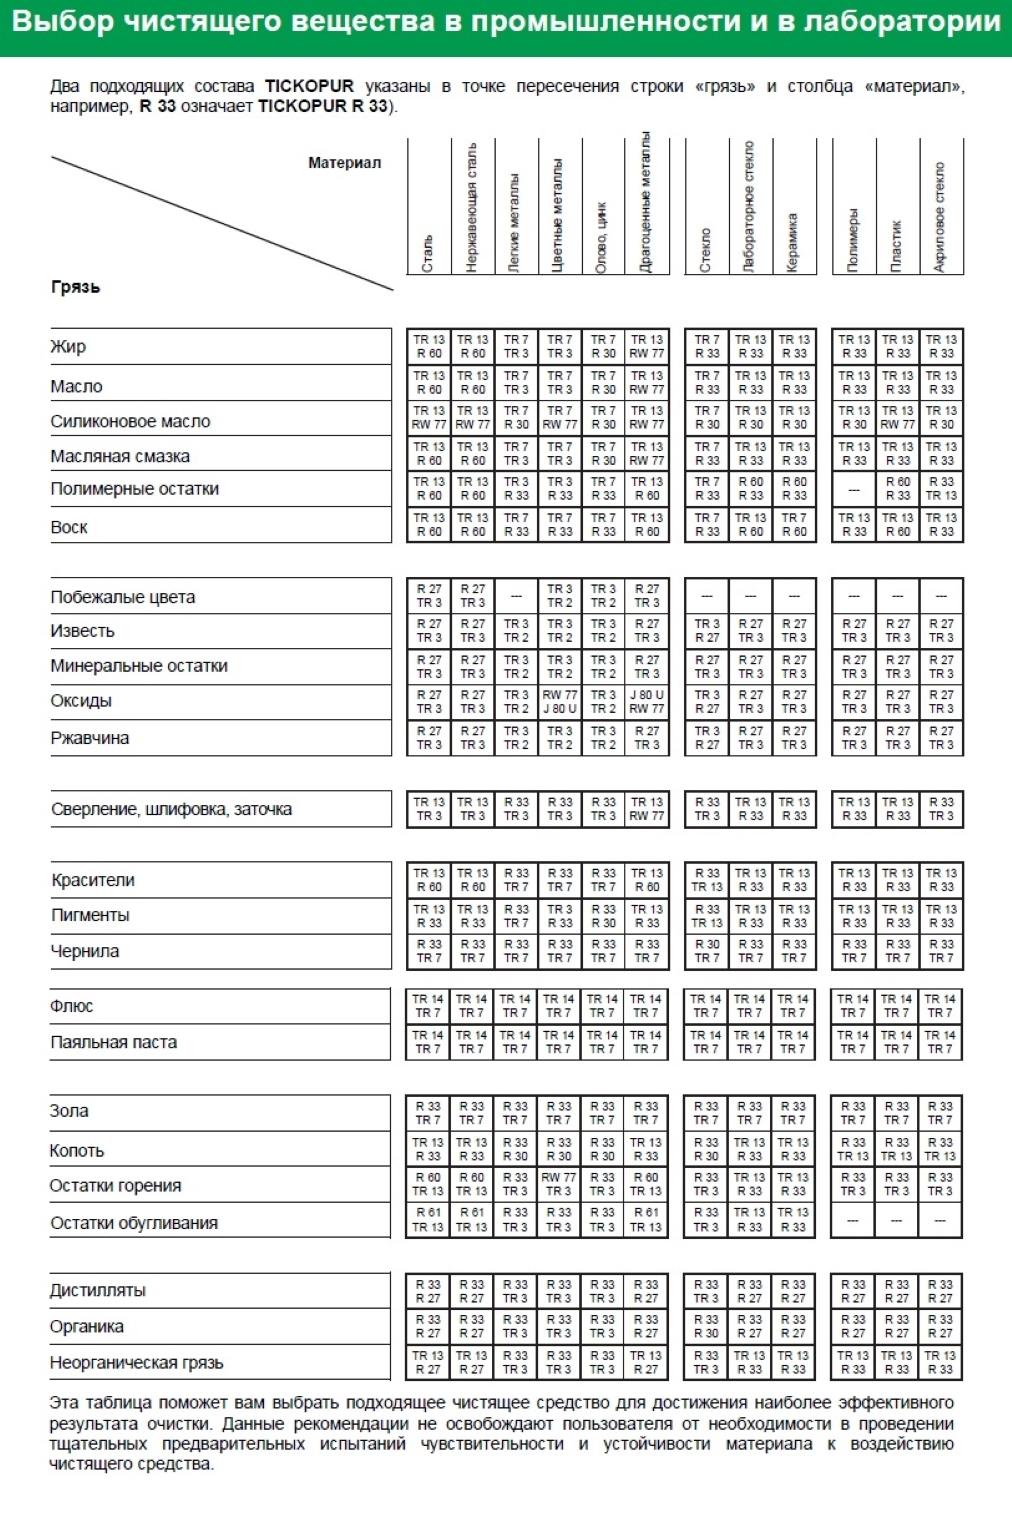 Таблица выбора чистящего вещества TR 3 TICKOPUR